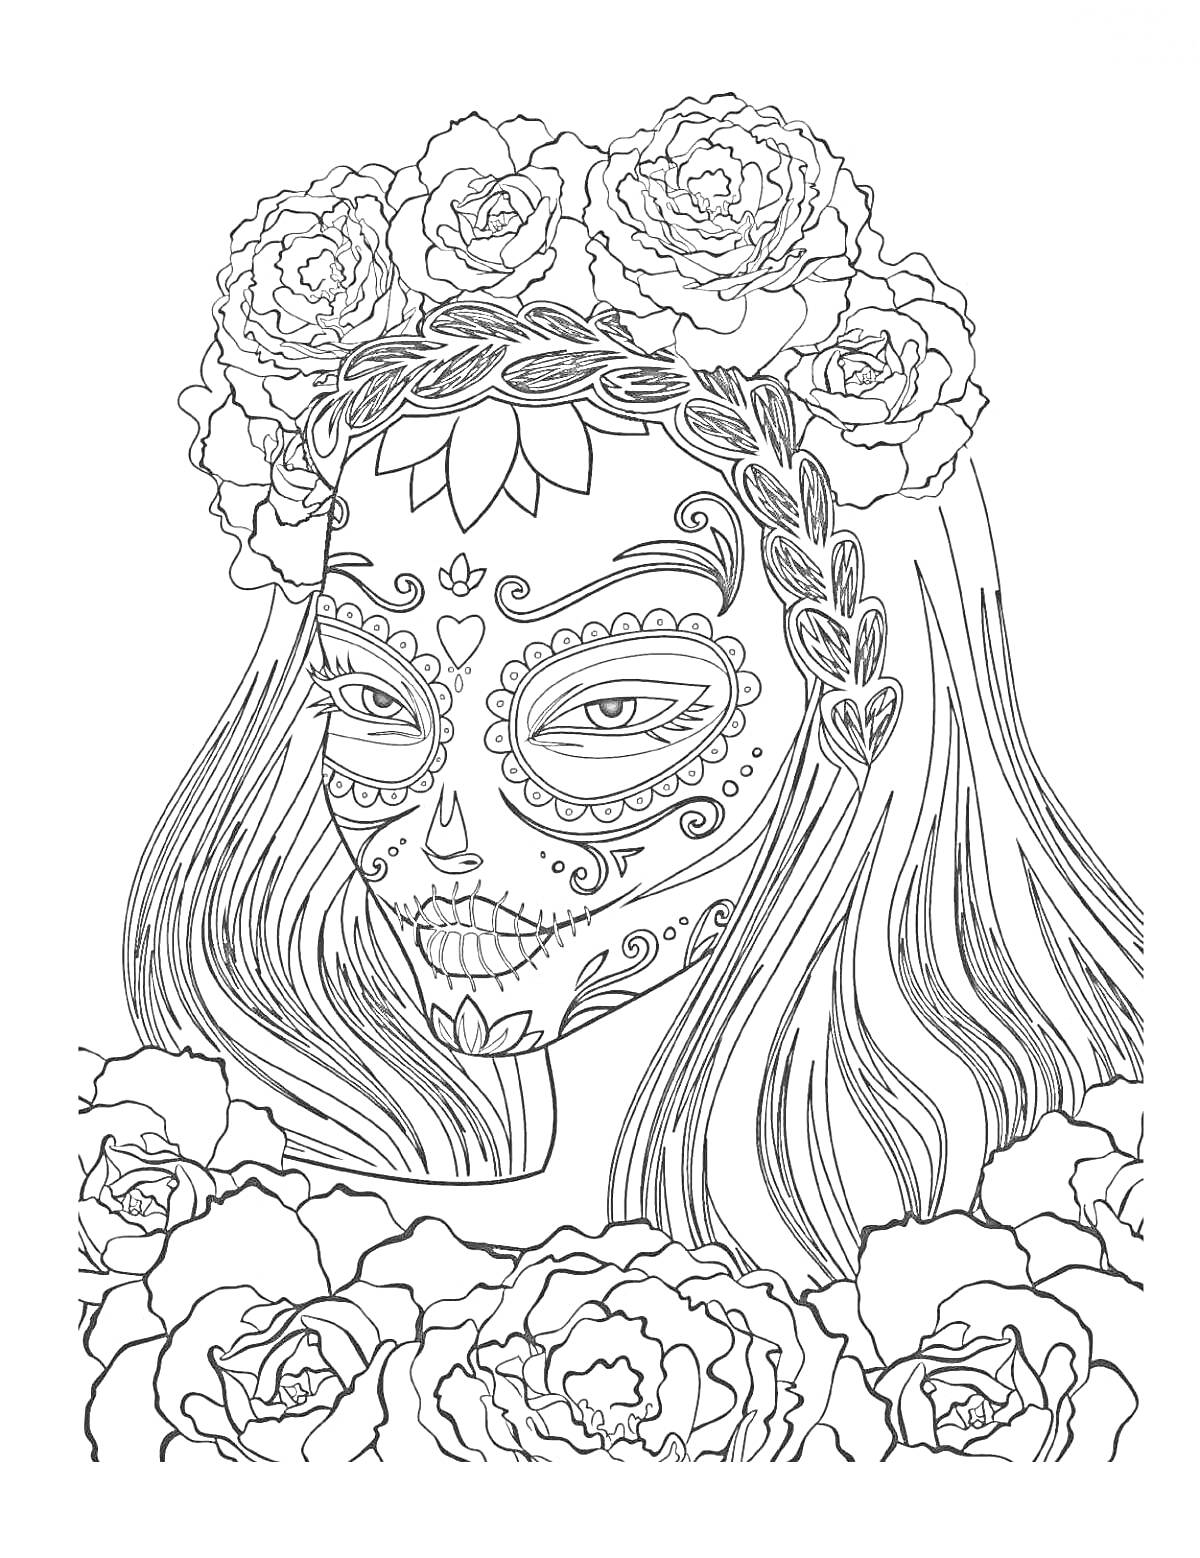 Раскраска Женщина в образе куклы Calavera (с замысловатыми узорами на лице), венок из роз на голове, волосы с косой обрамлены цветами